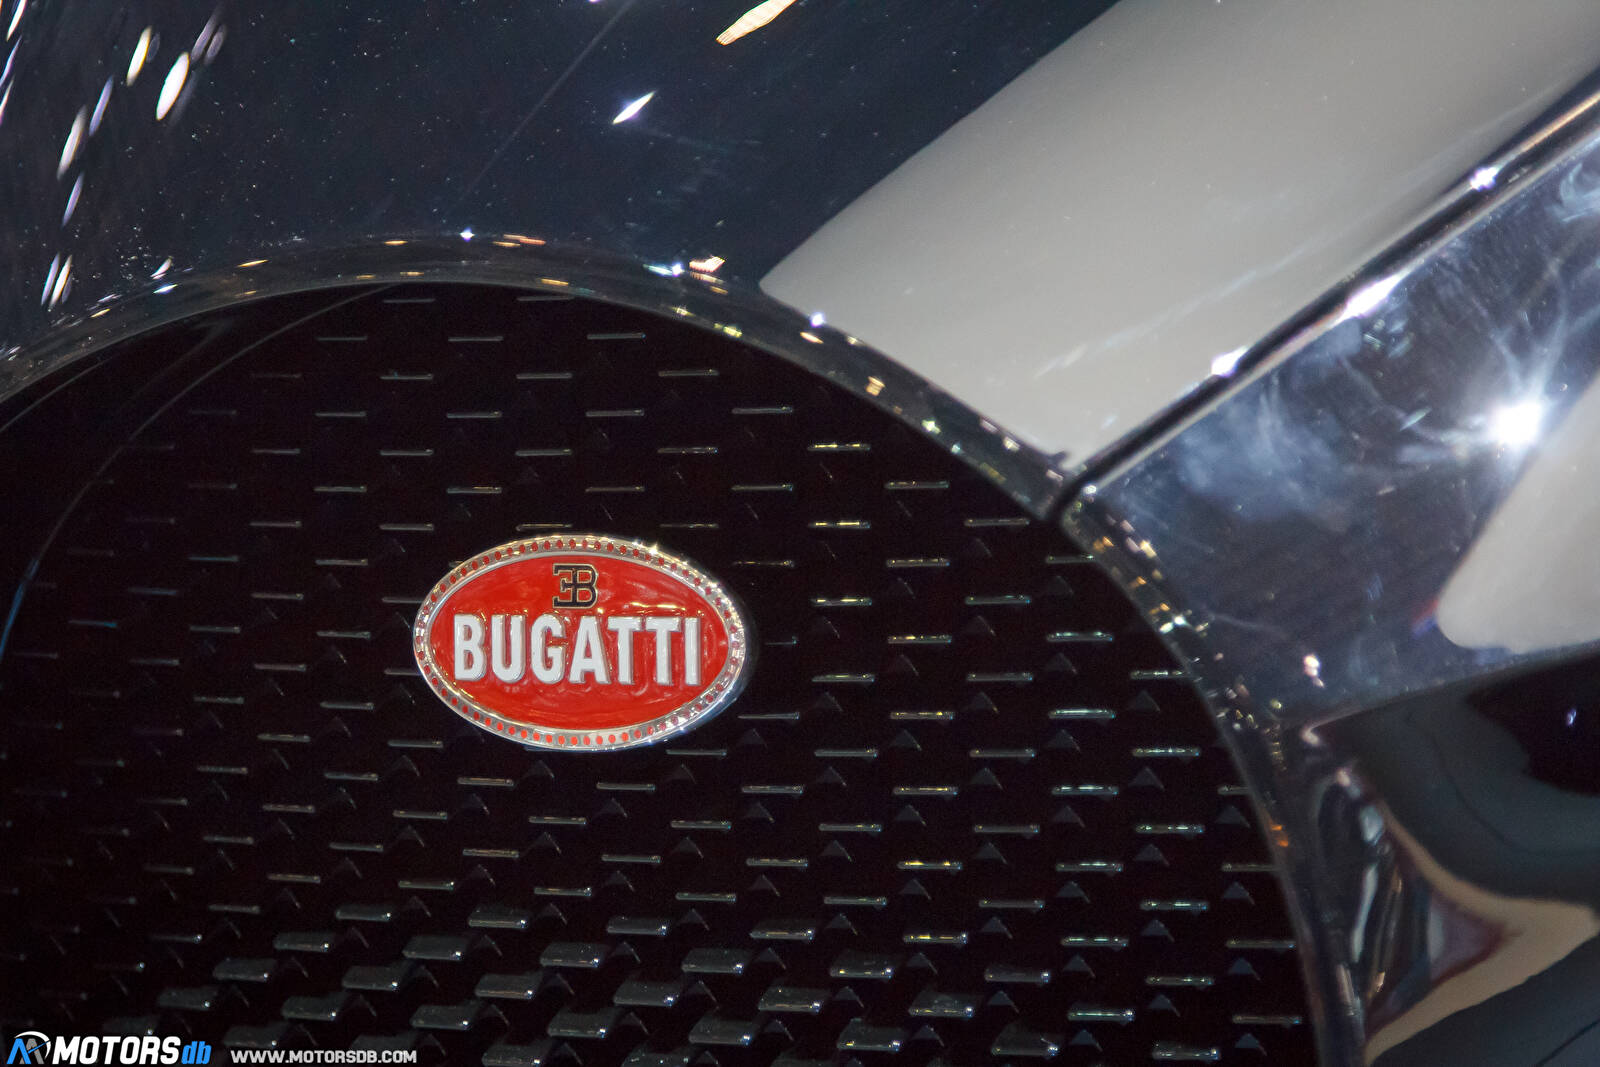 Bugatti-La-Voiture-Noire-2019-84009.jpg?mtime=1552408470